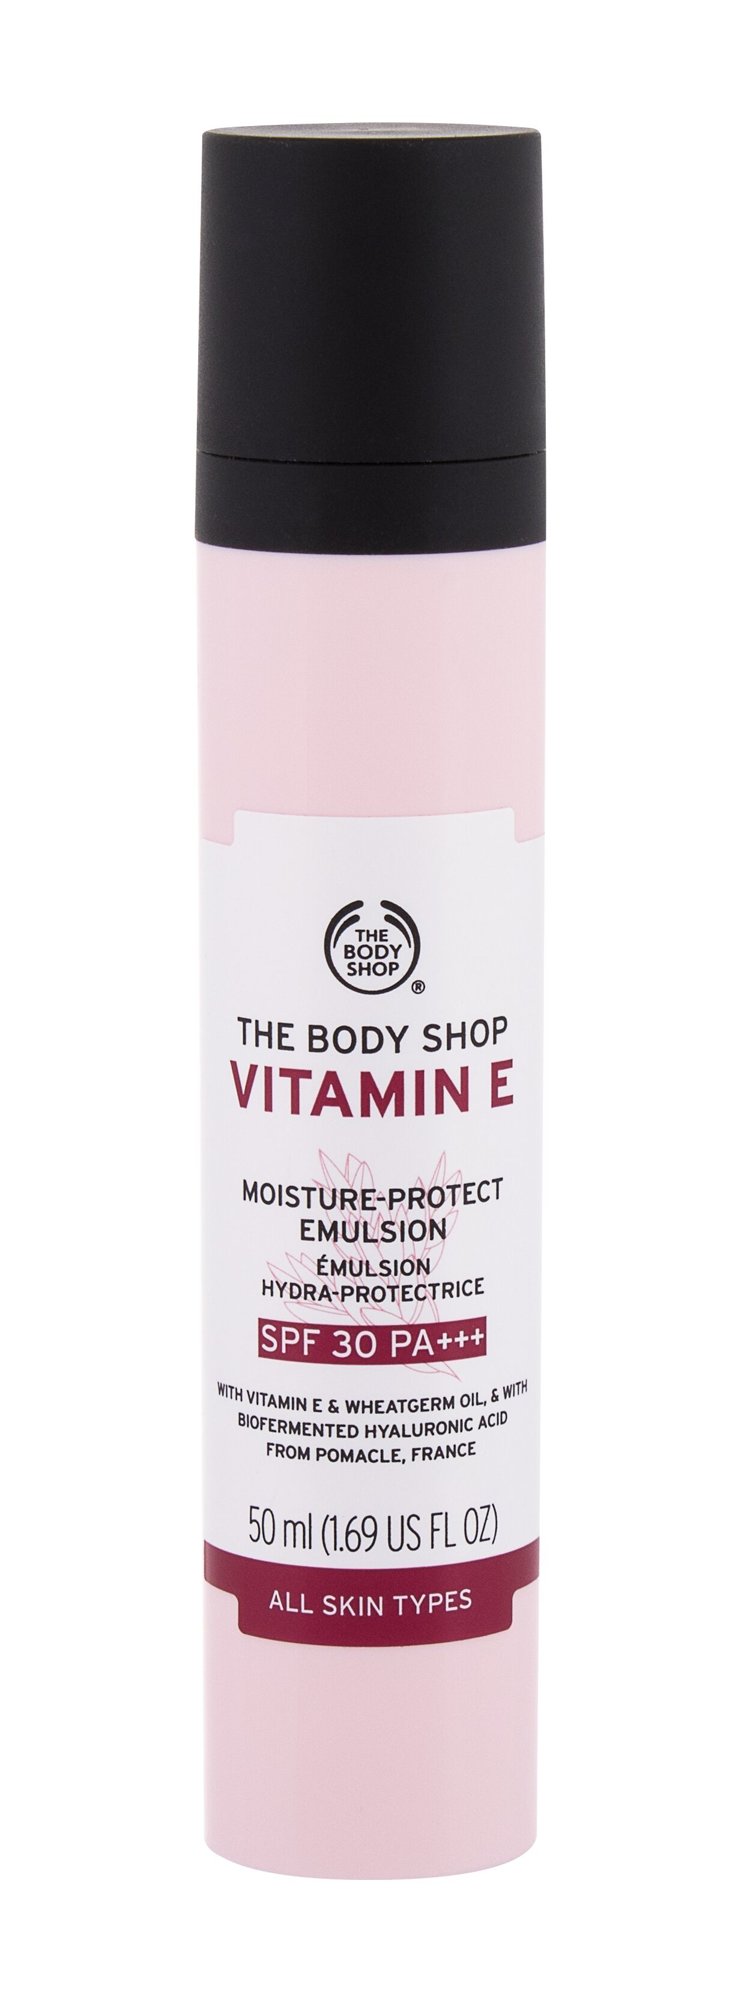 The Body Shop Vitamin E